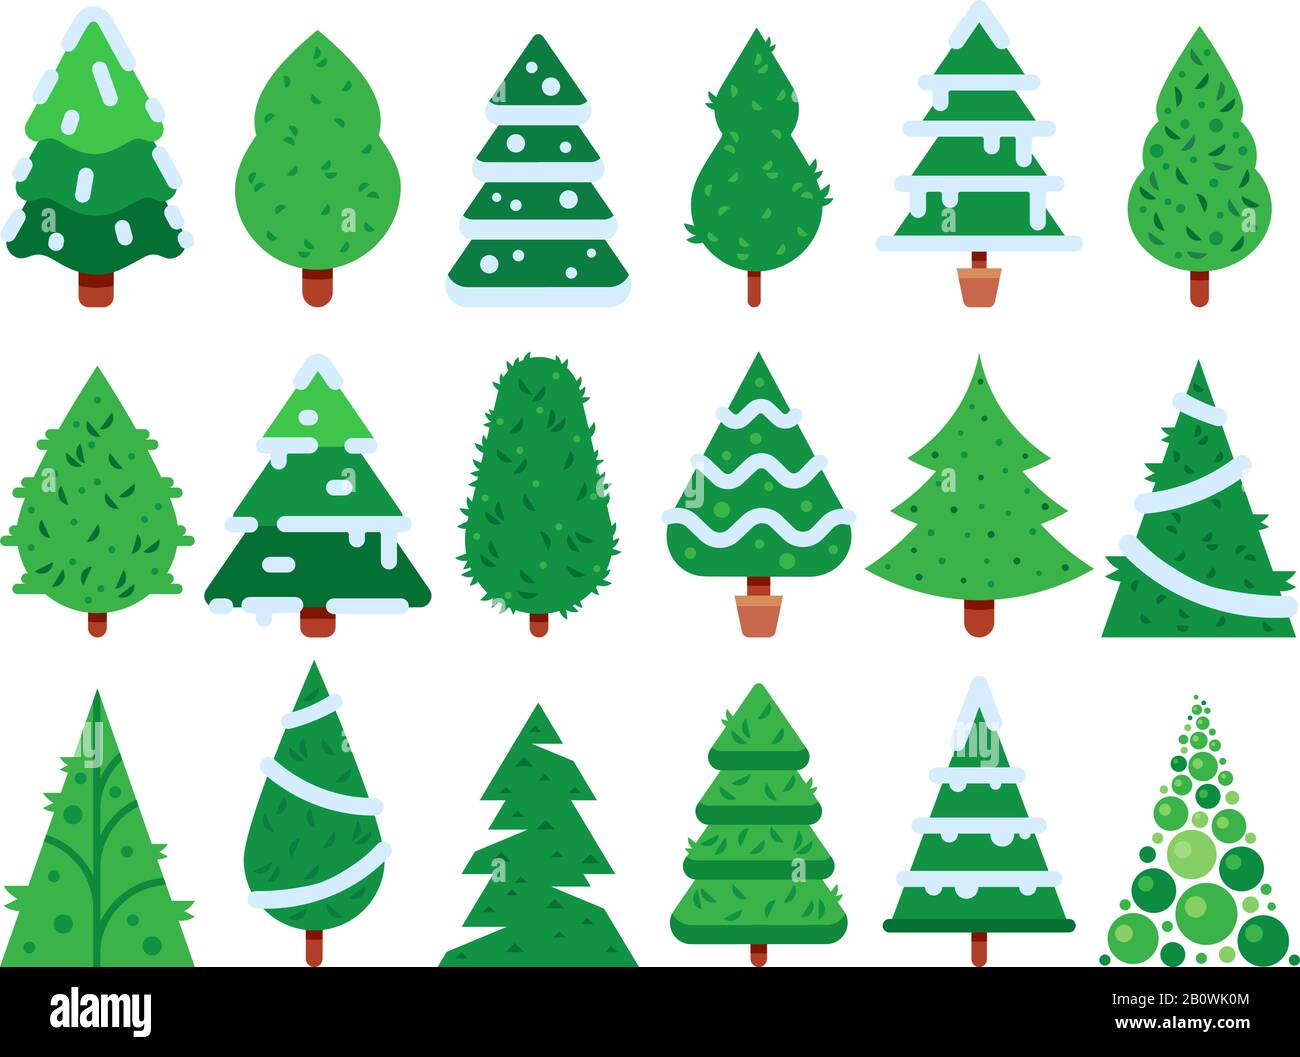 Arbre de noël vert. Forme d'arbres de Noël simple, jeu d'icônes vectorielles isolées de sapin nature Illustration de Vecteur